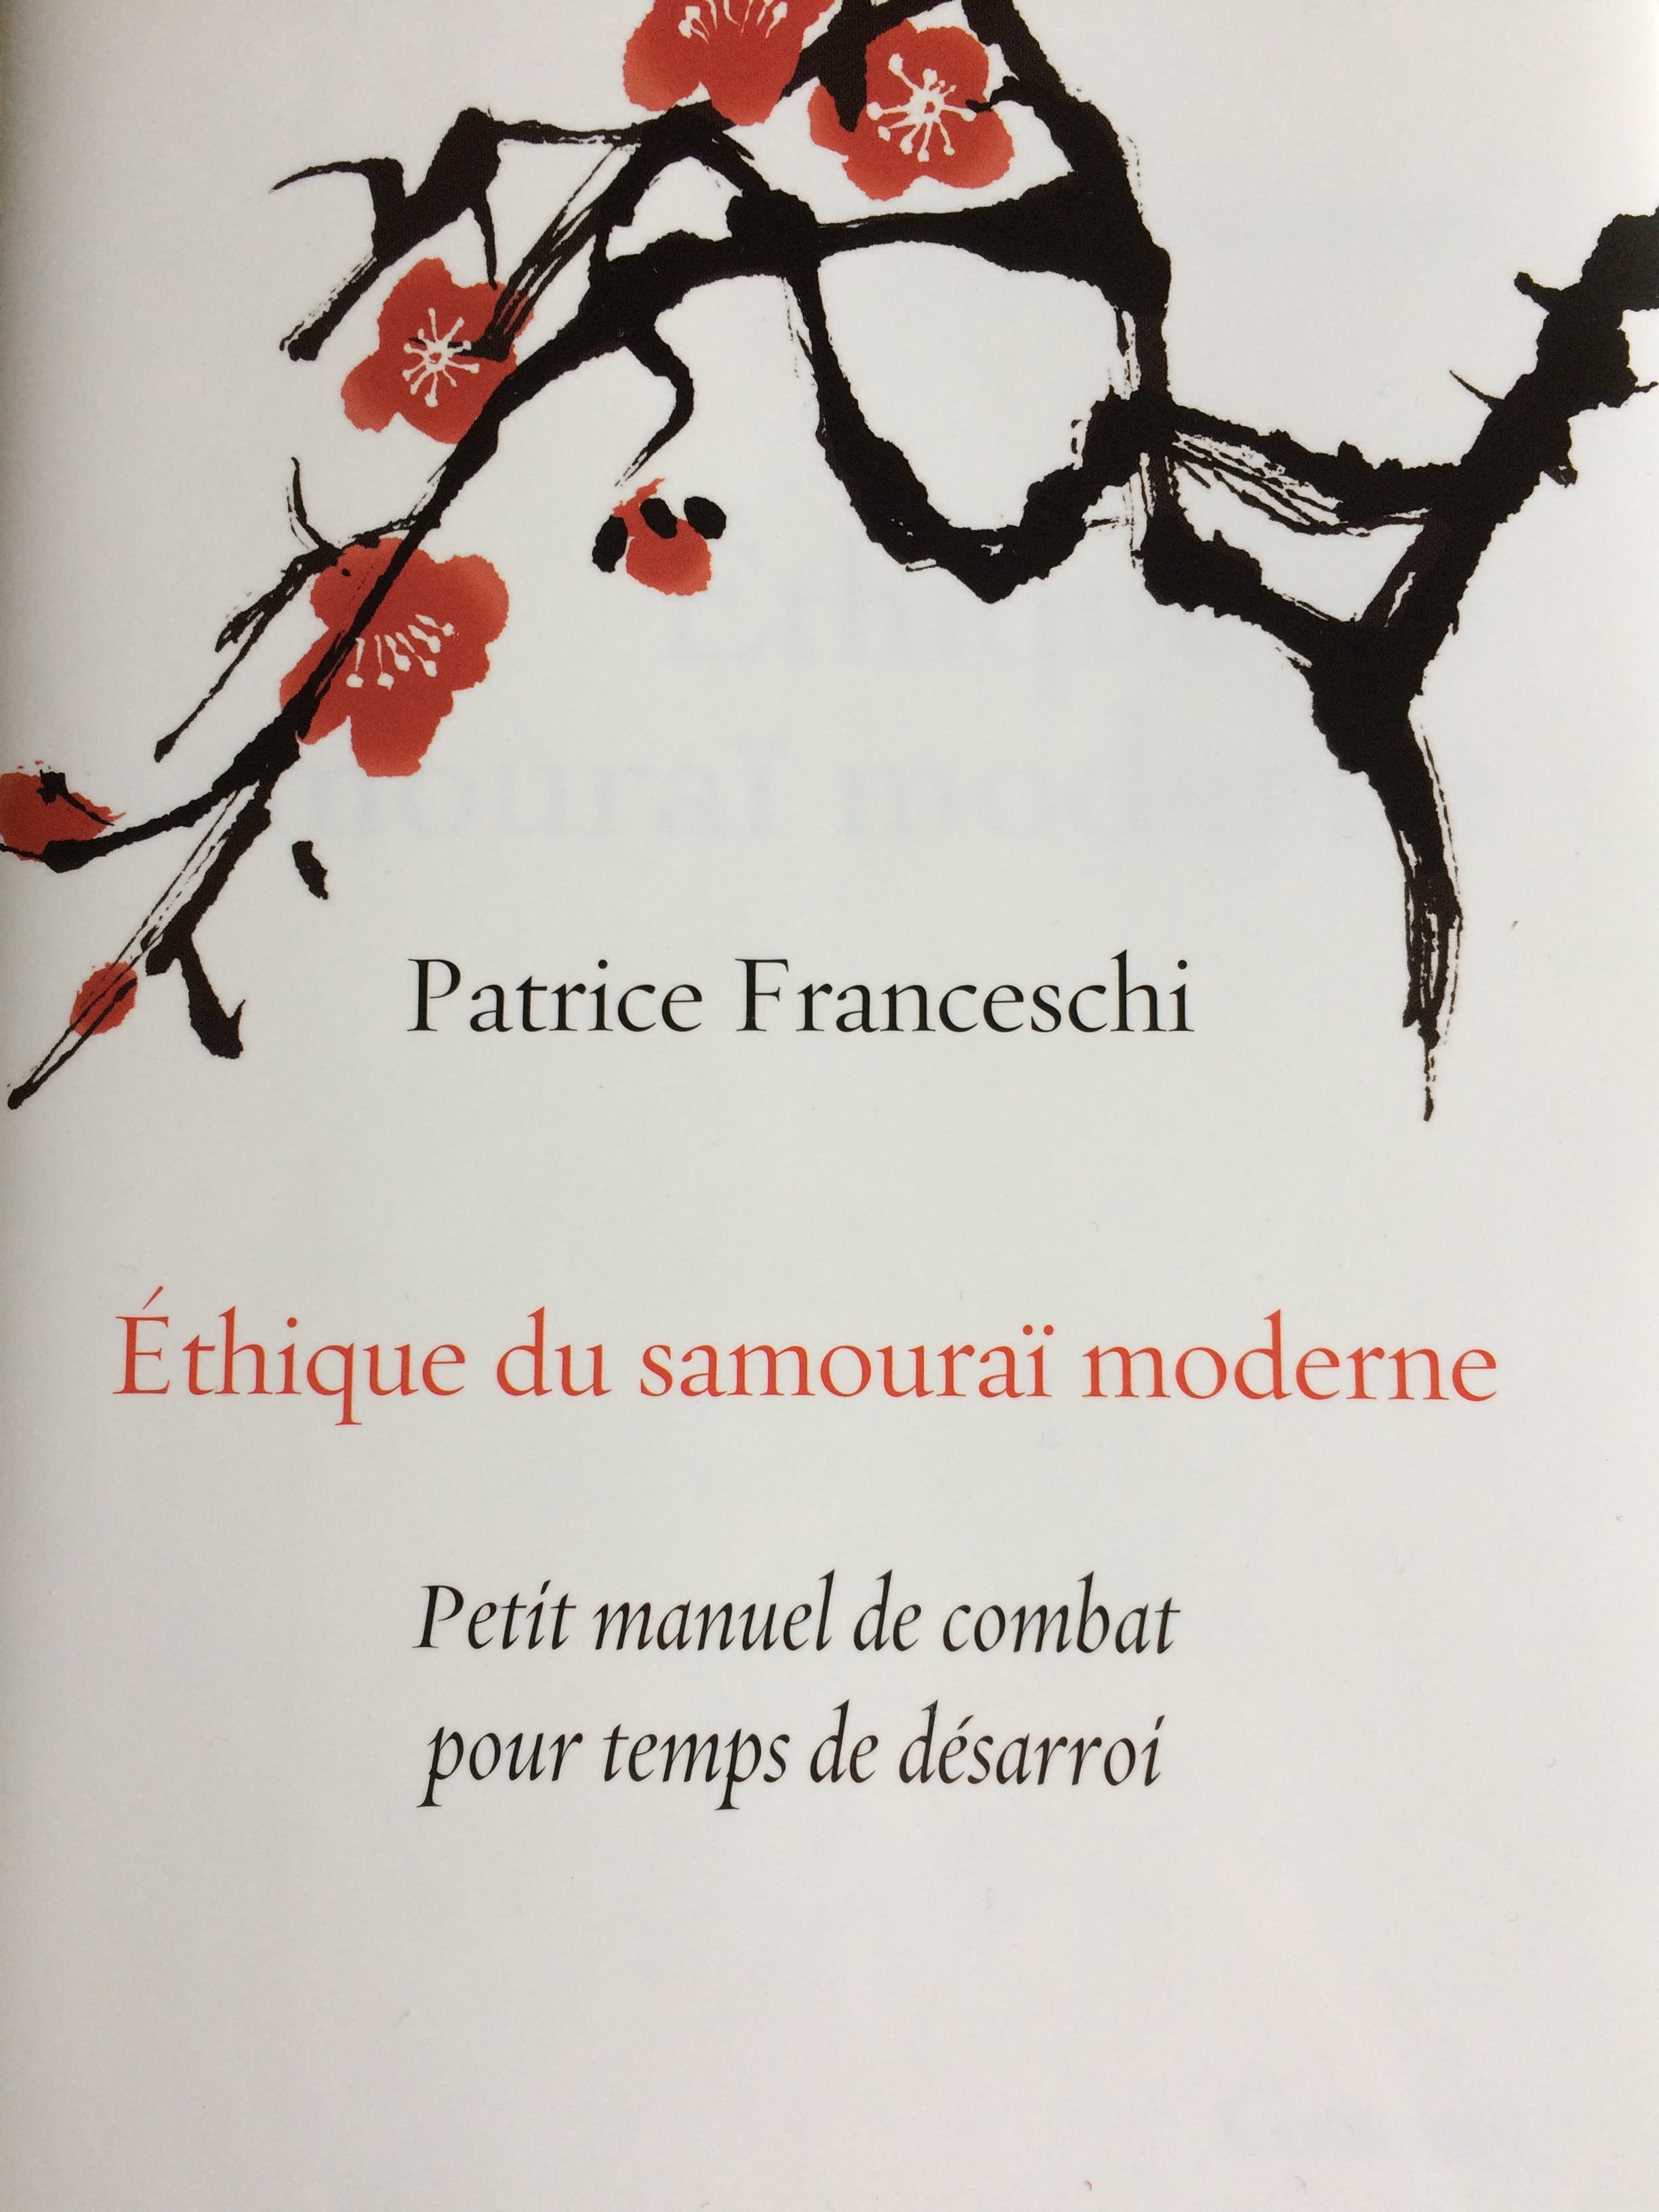 Ethique du samouraï moderne_Patrice Franceschi